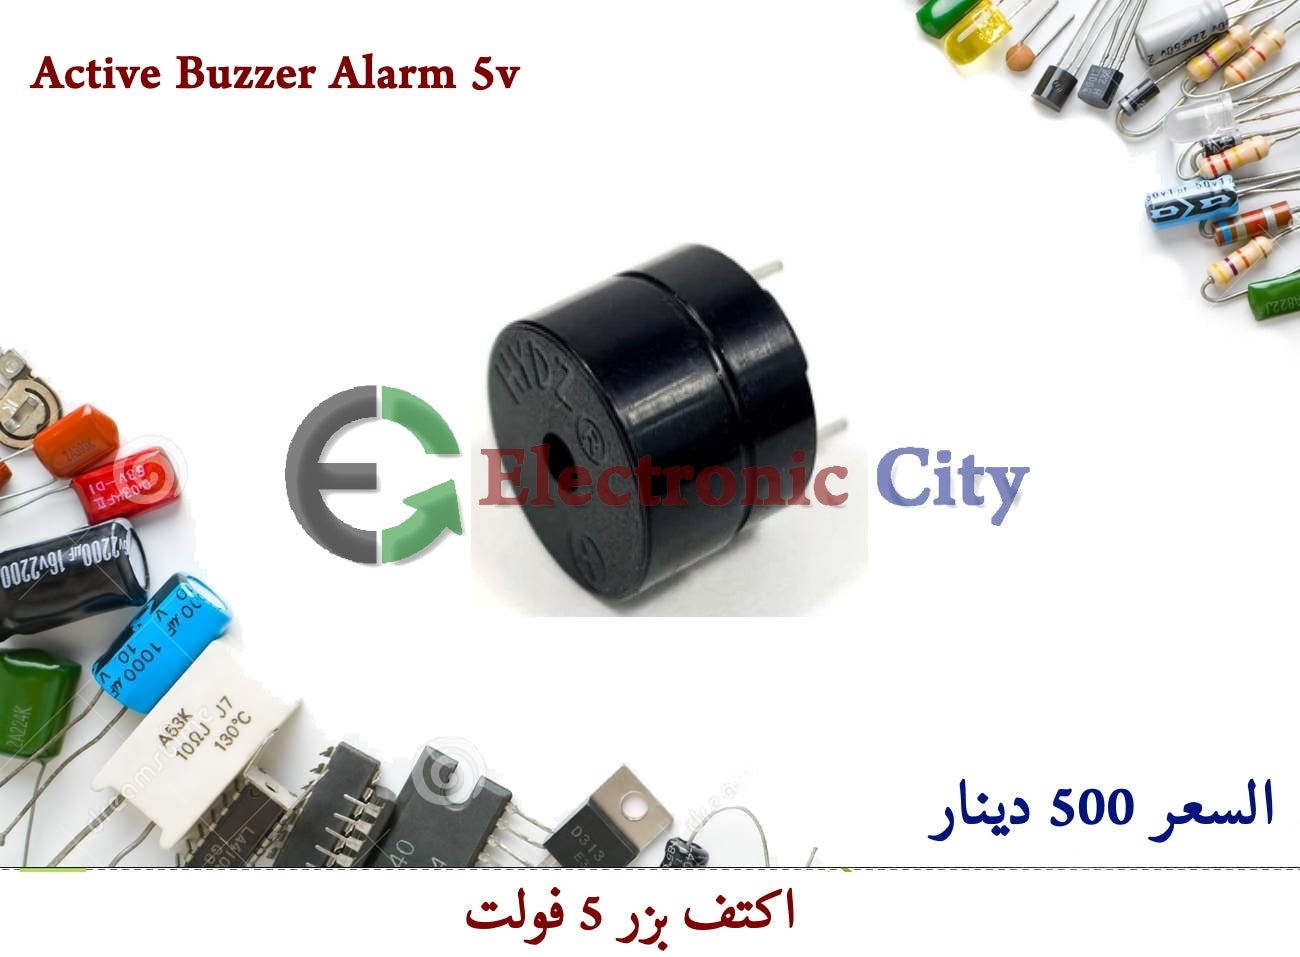 Active Buzzer Alarm 5v